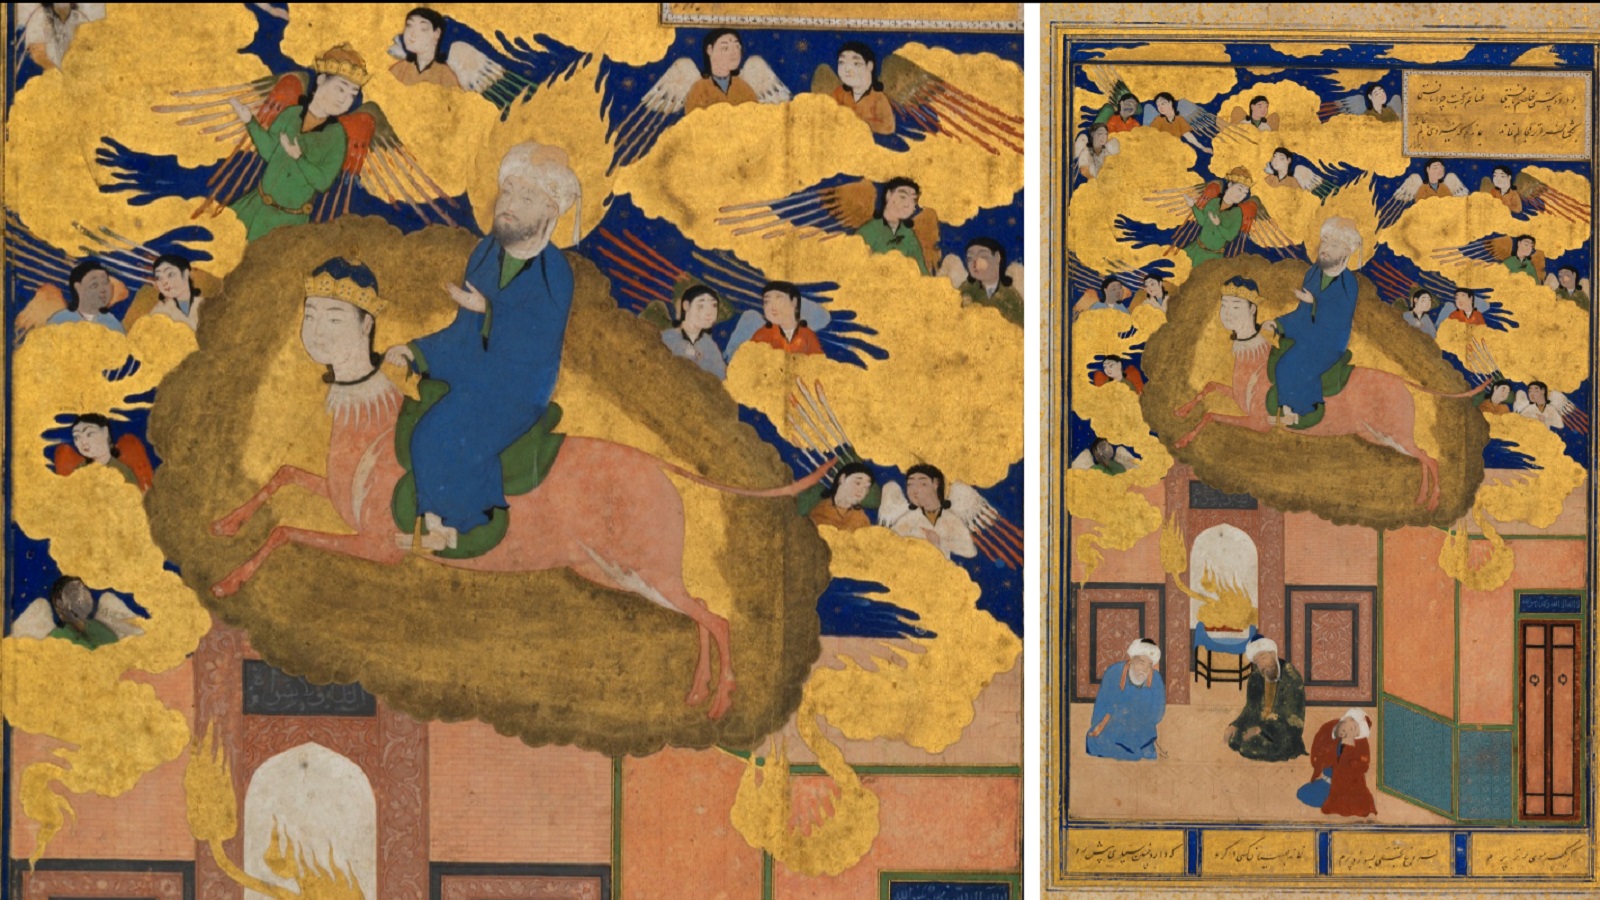  منمنمة تعود إلى نسخة من "بستان سعدي"، بخارى، النصف الأول من القرن السادس عشر، متحف متروبوليتان، نيويورك.